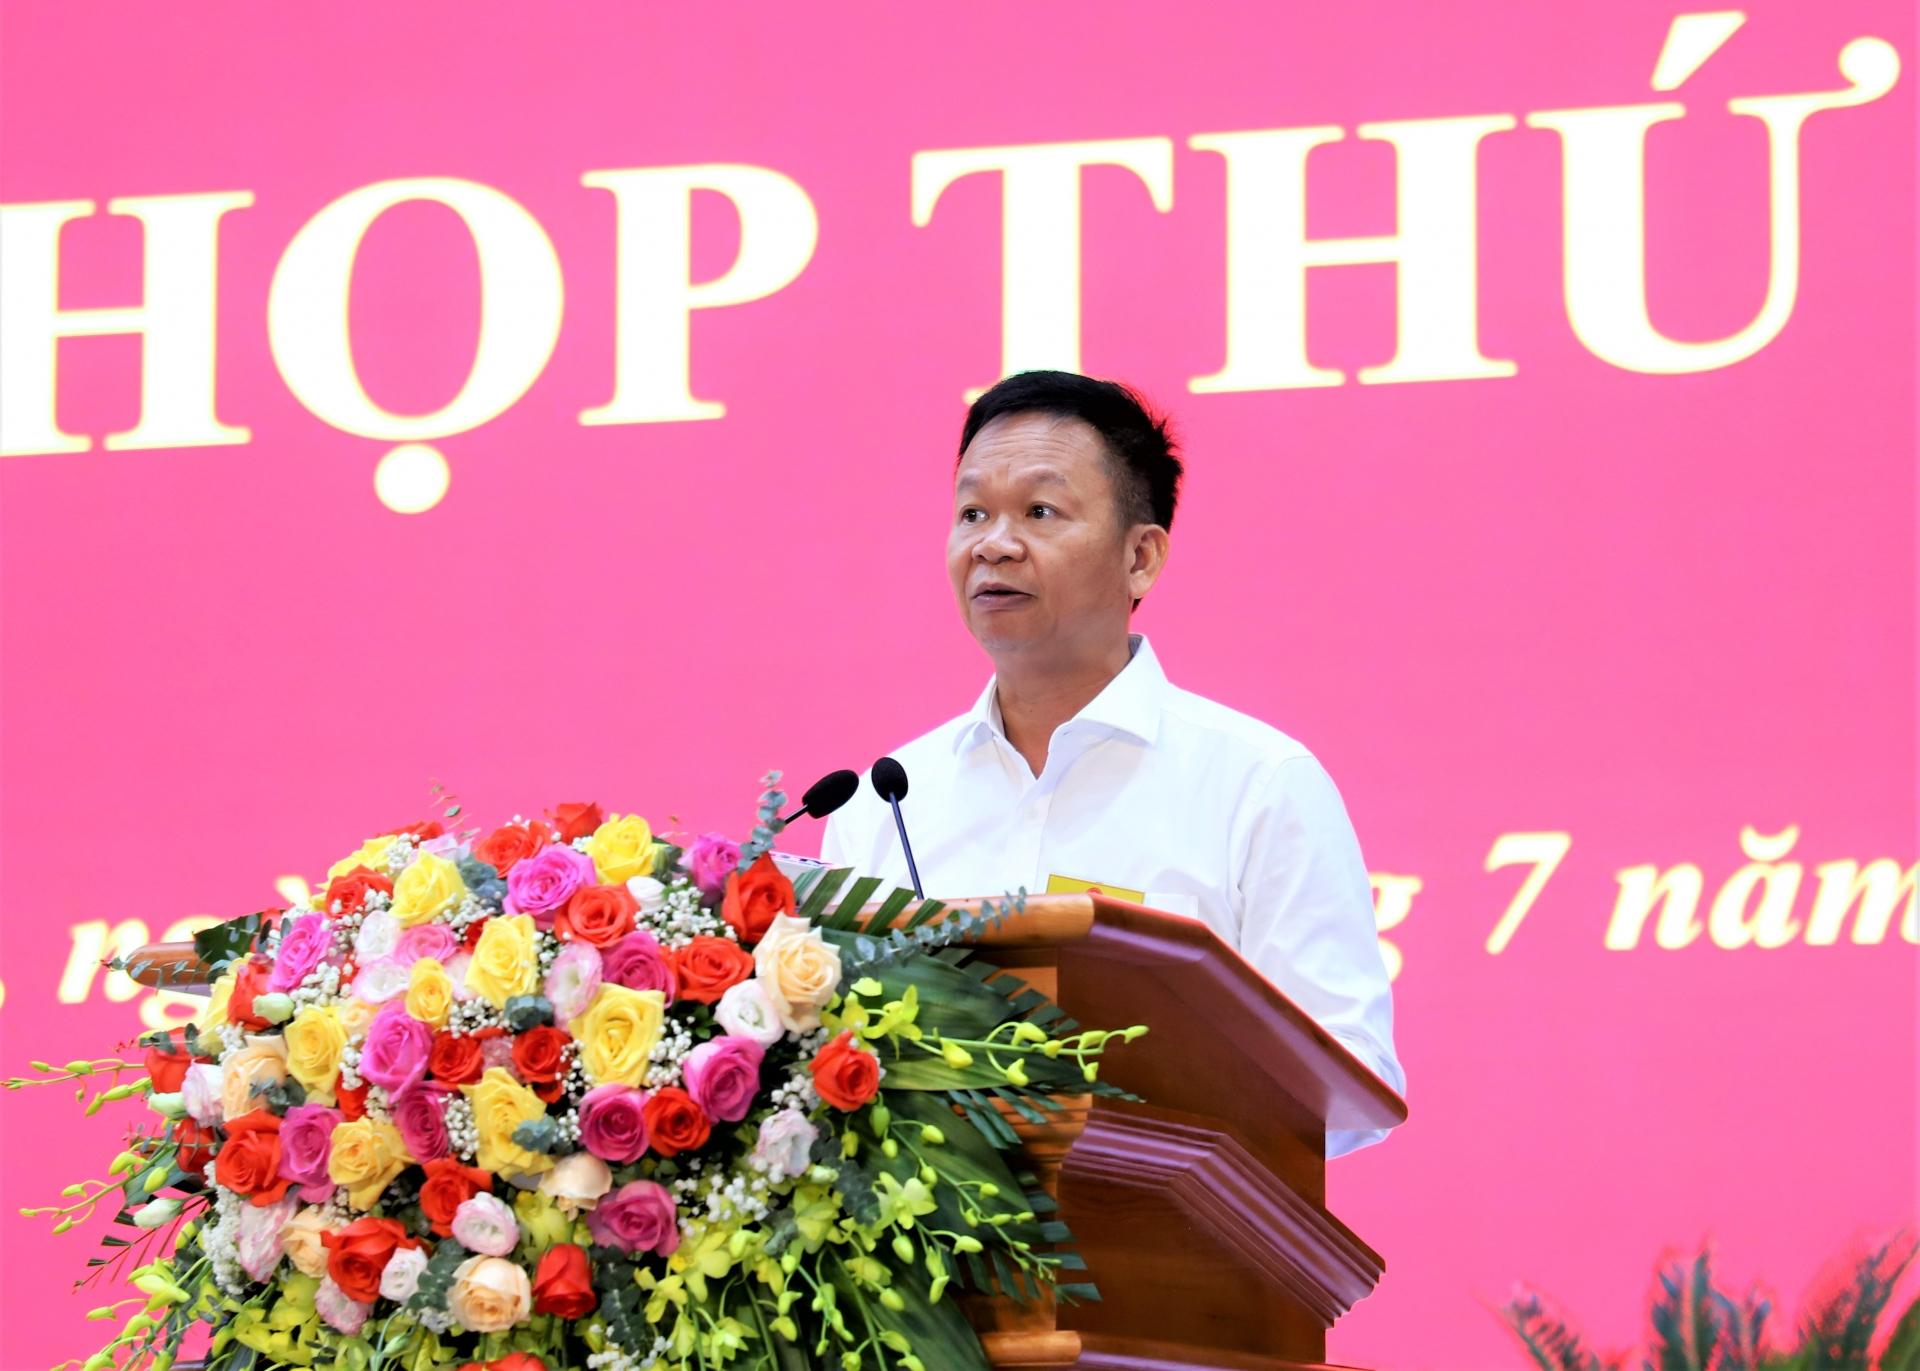 Giám đốc Sở Tài chính Nguyễn Ngọc Thanh trình bày tờ trình quy định một số mức chi thực hiện Đề án Xây dựng xã hội học tập giai đoạn 2021 - 2030.